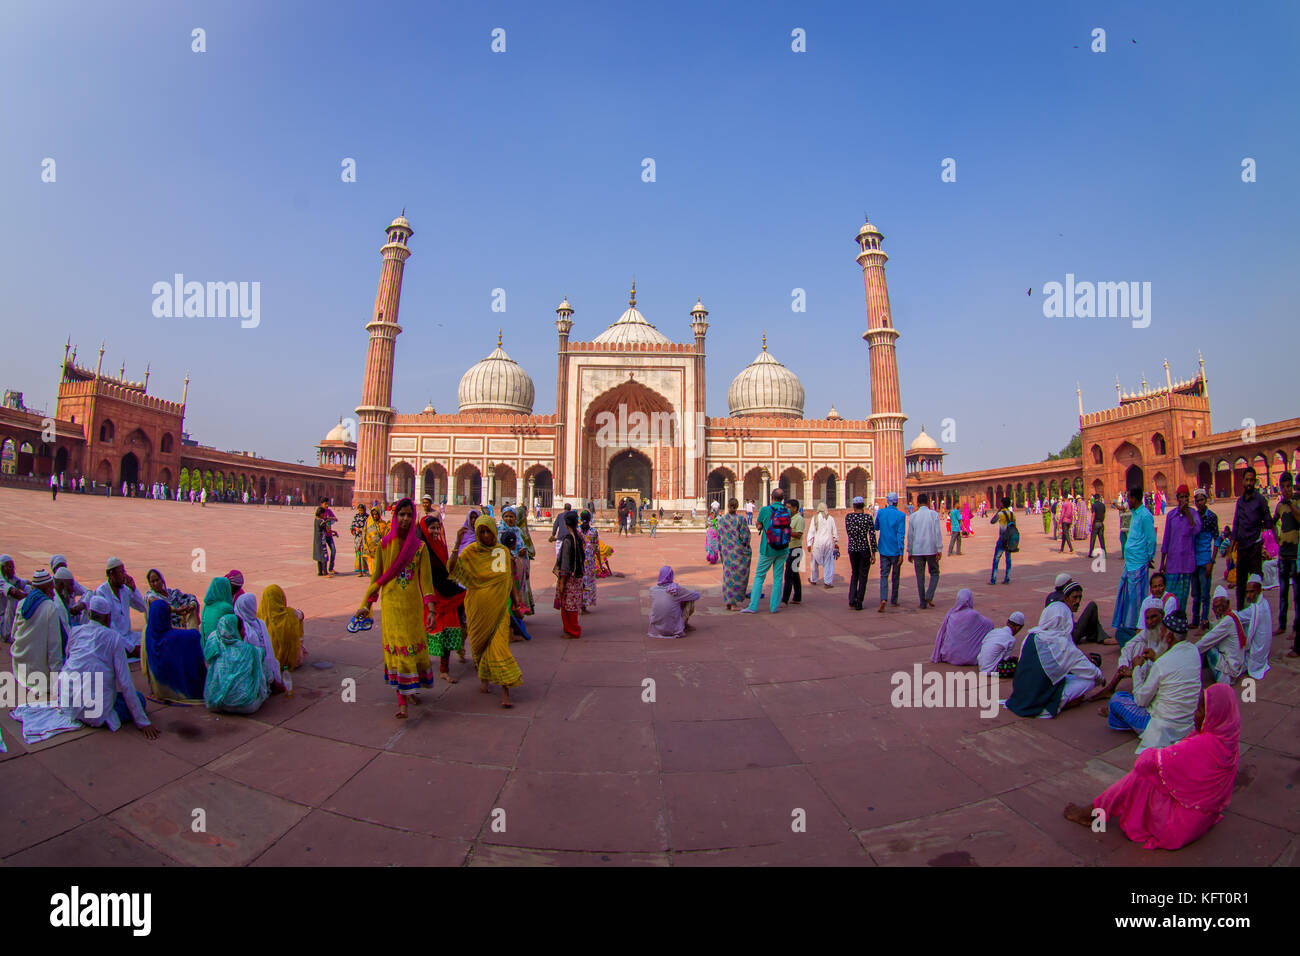 Delhi, Indien - 27. September 2017: Masse von Menschen zu Fuß vor einem wunderschönen Jama Masjid Tempel, das ist die größte Moschee in Indien Delhi, Indien, Fischaugen-Effekt Stockfoto